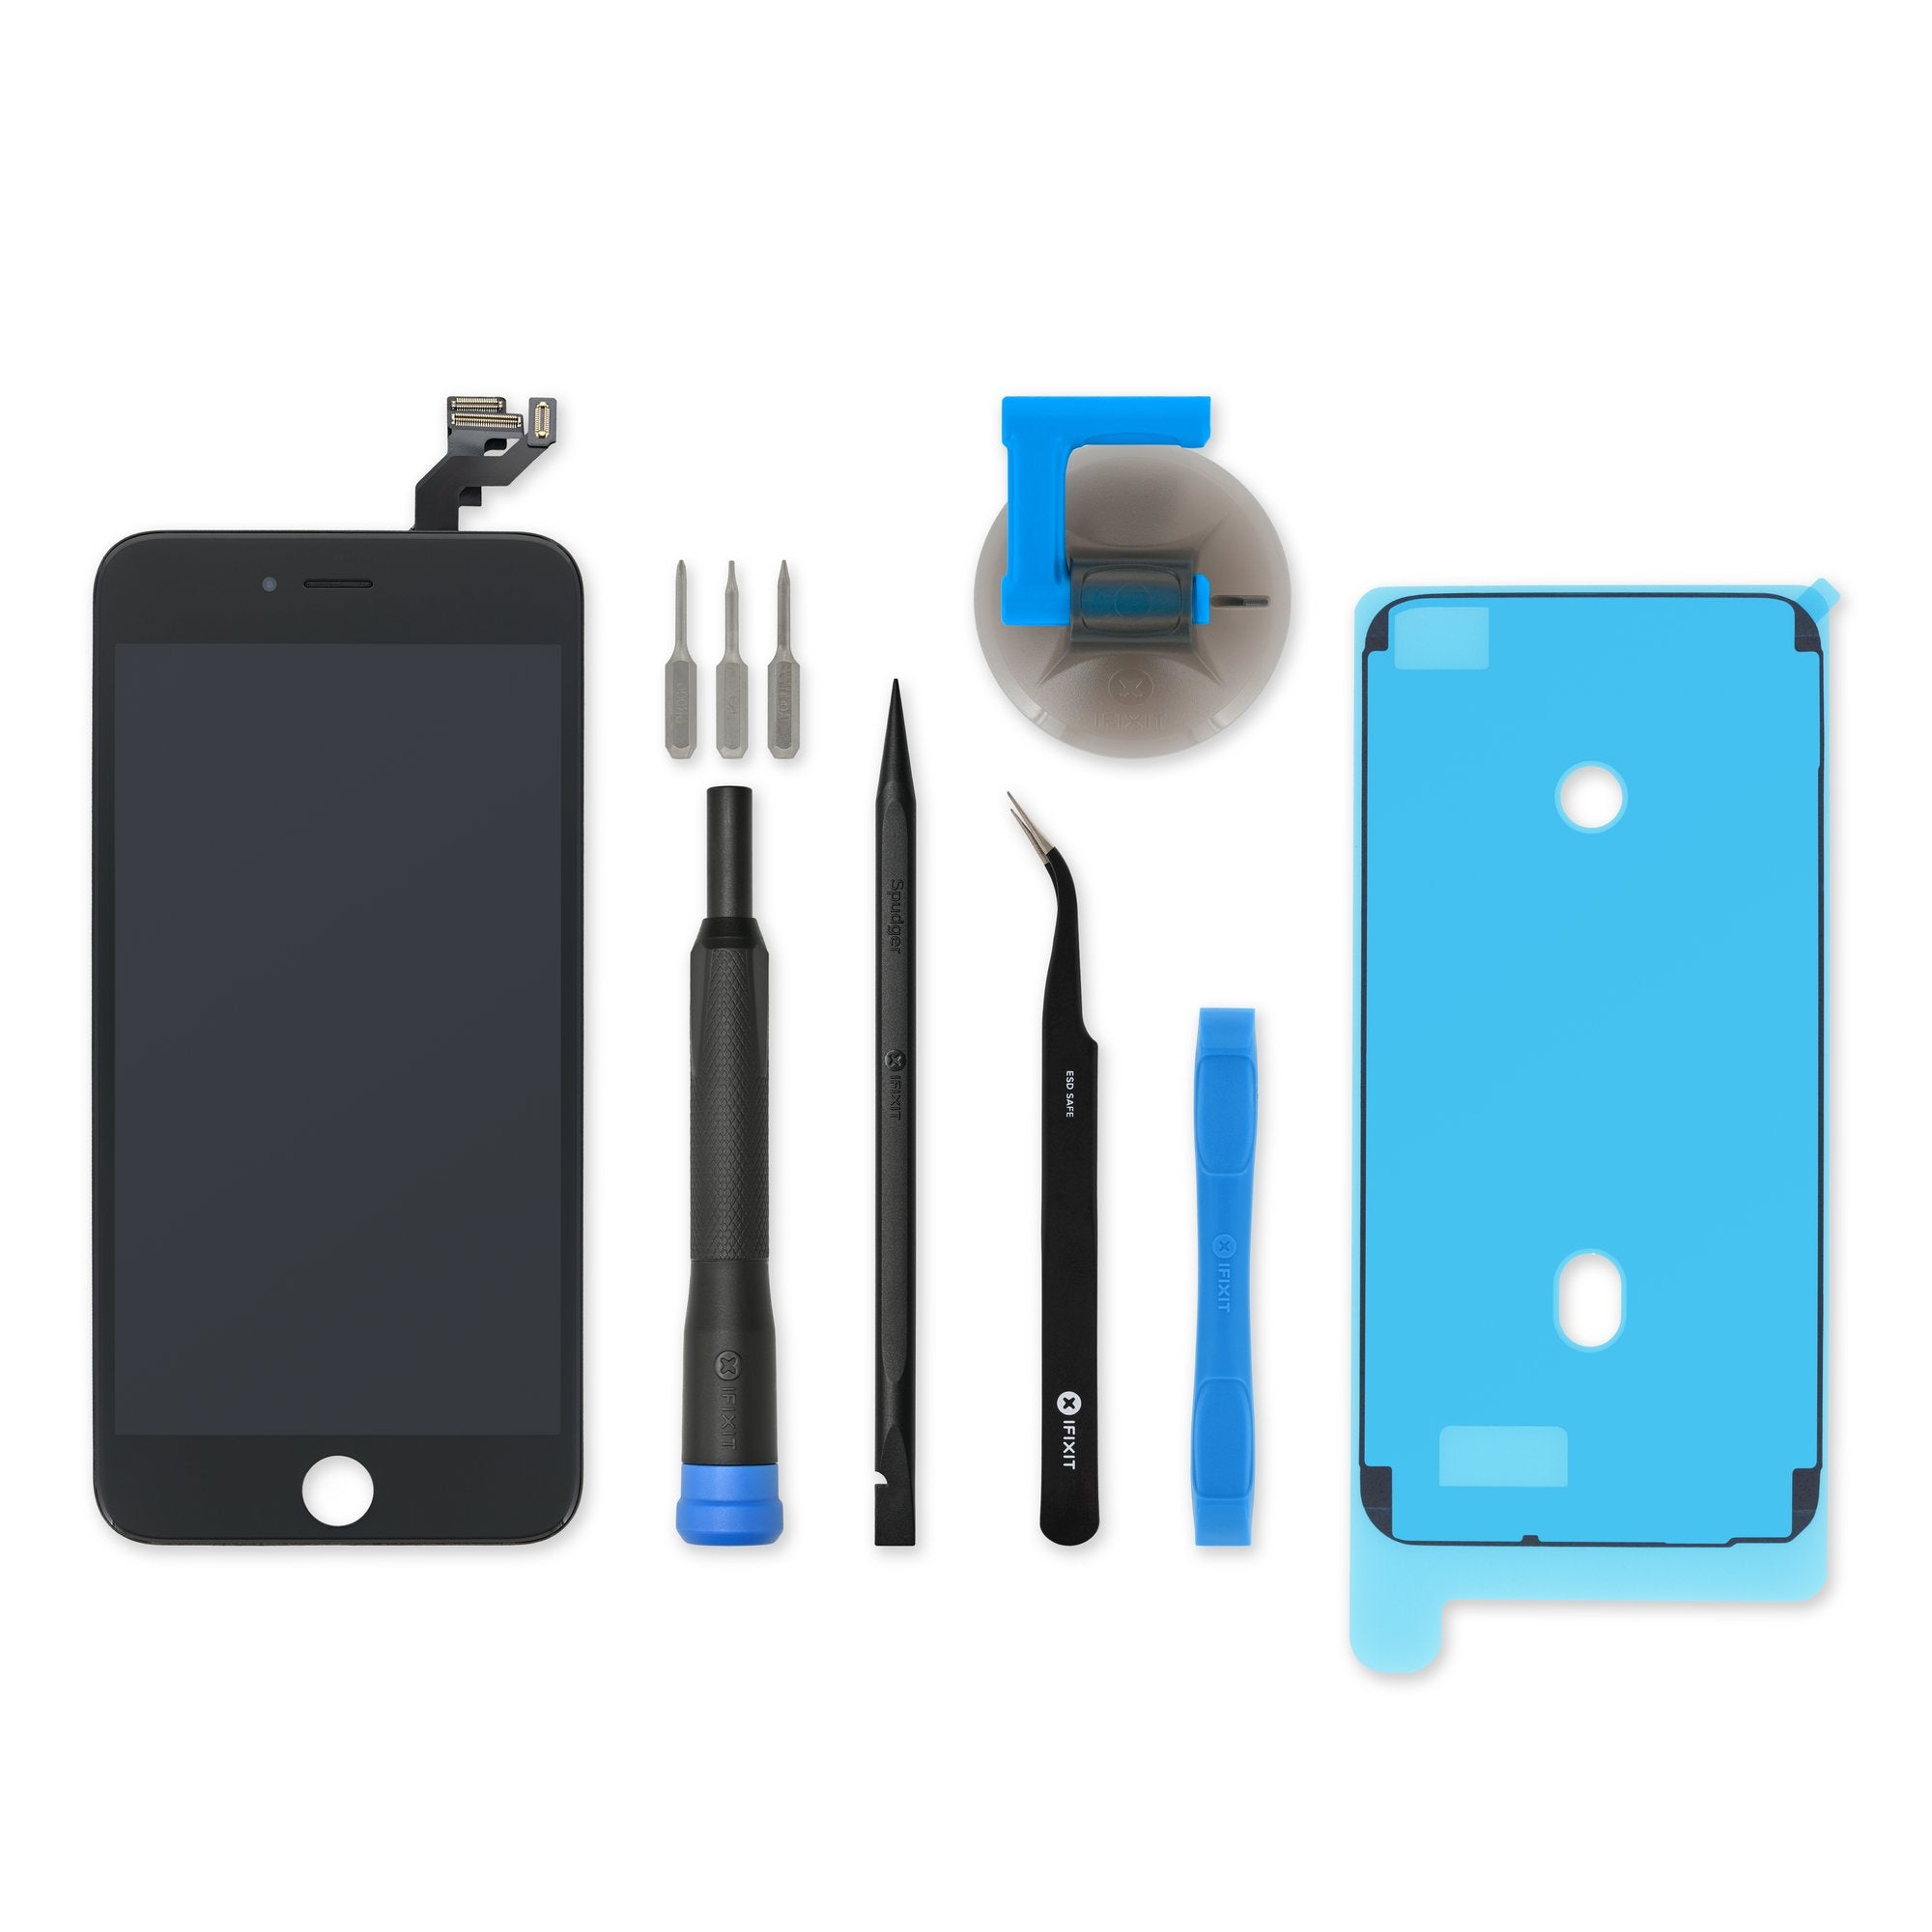 Kit avec écran assemblé pour réparer l'iPhone 8 noir au meilleur prix